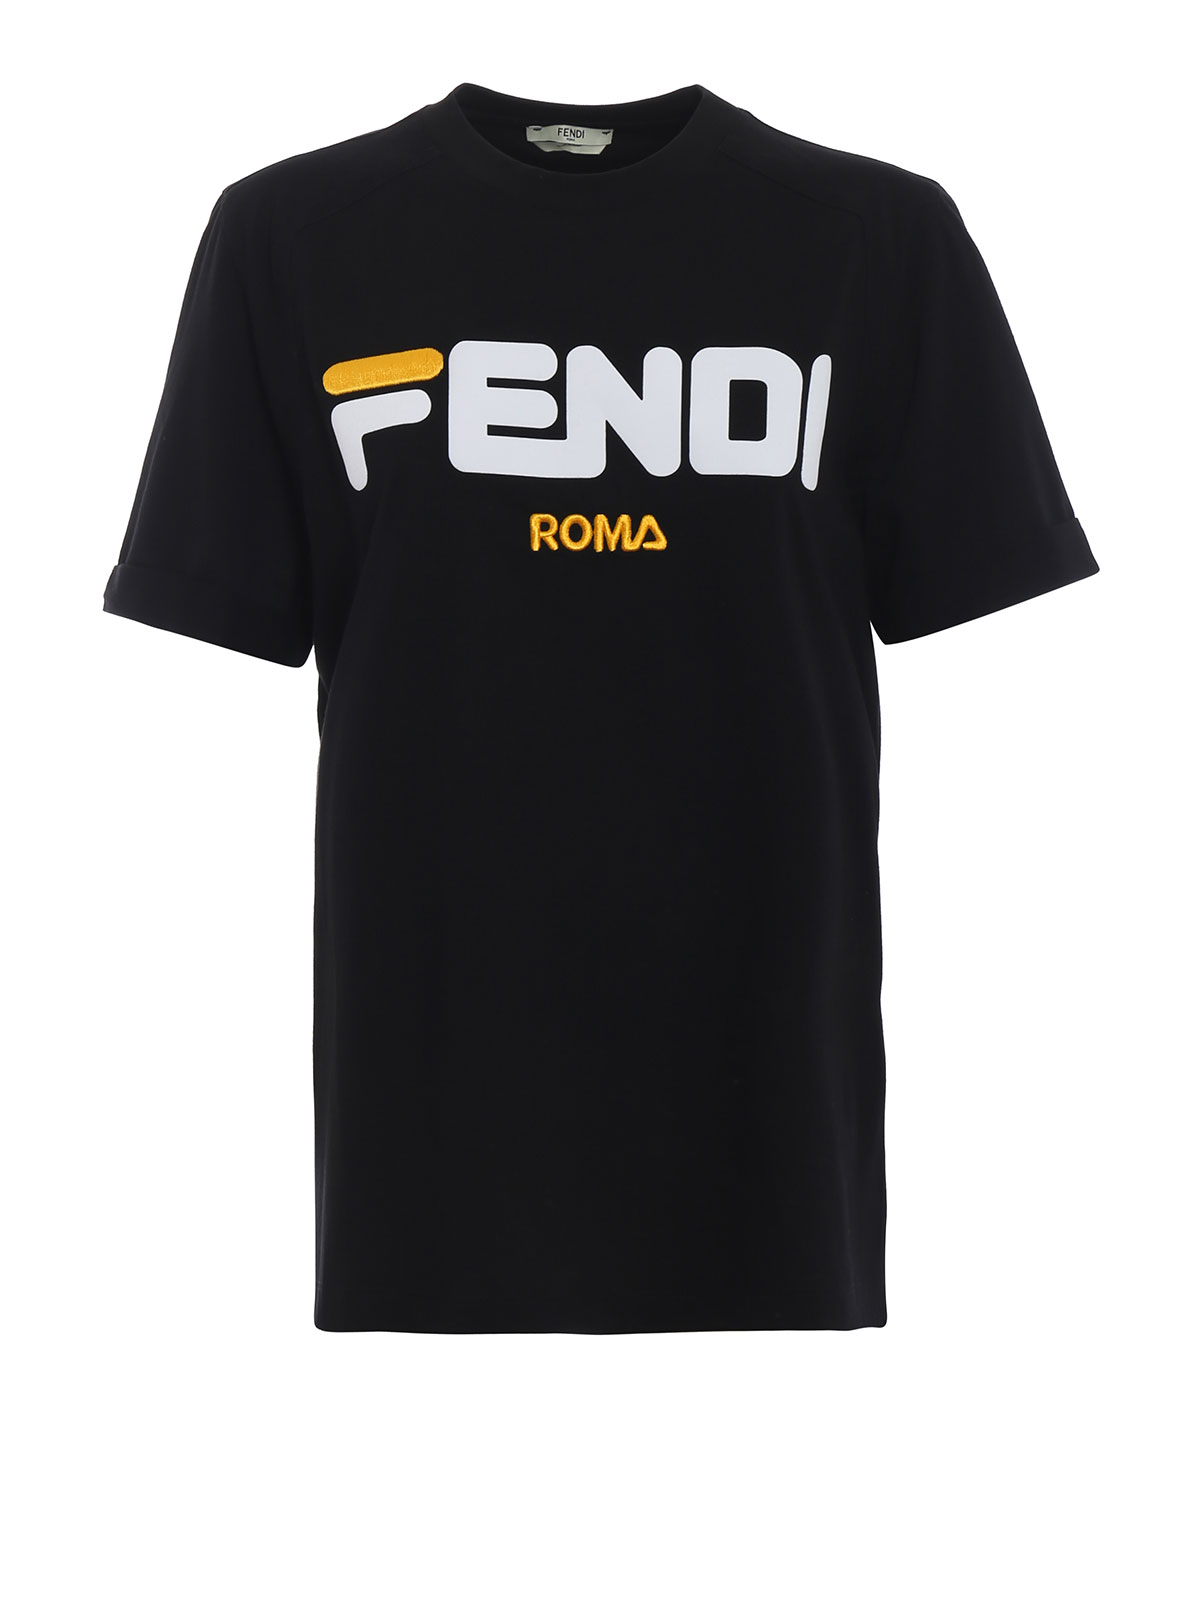 Tシャツ Fendi - Tシャツ - 黒 - FS7074A5H1GME | iKRIX shop online